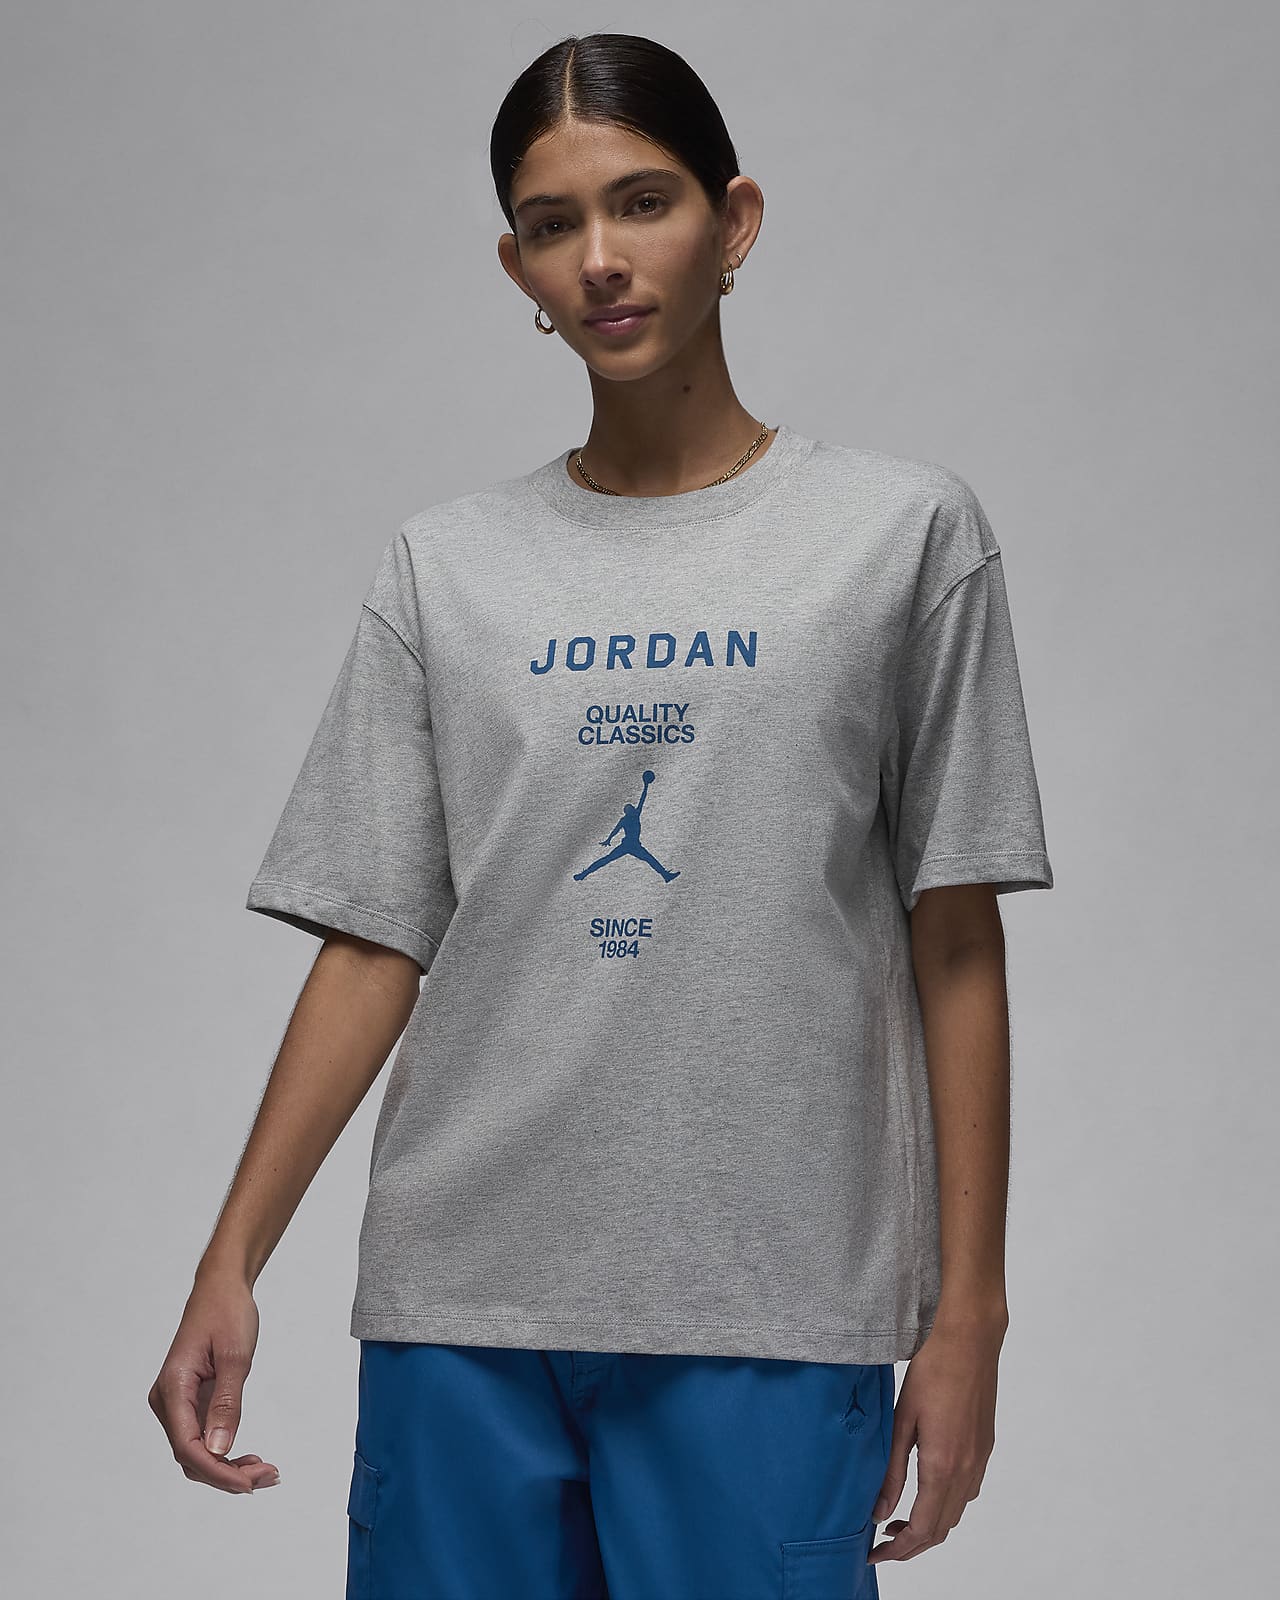 Jordan Women's Girlfriend T-Shirt